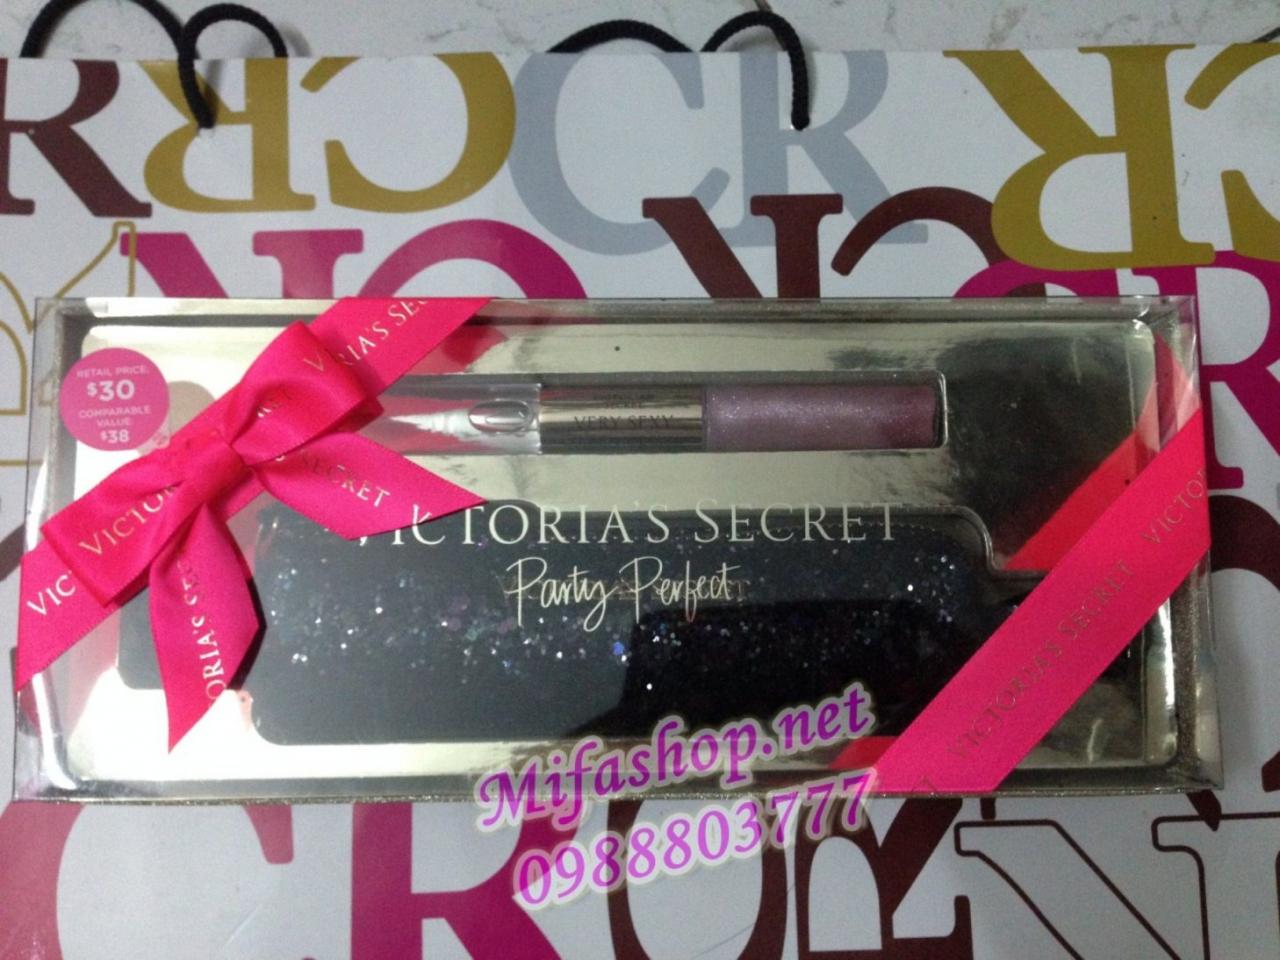 Set quà tặng Victoria's Secret Party Perfect